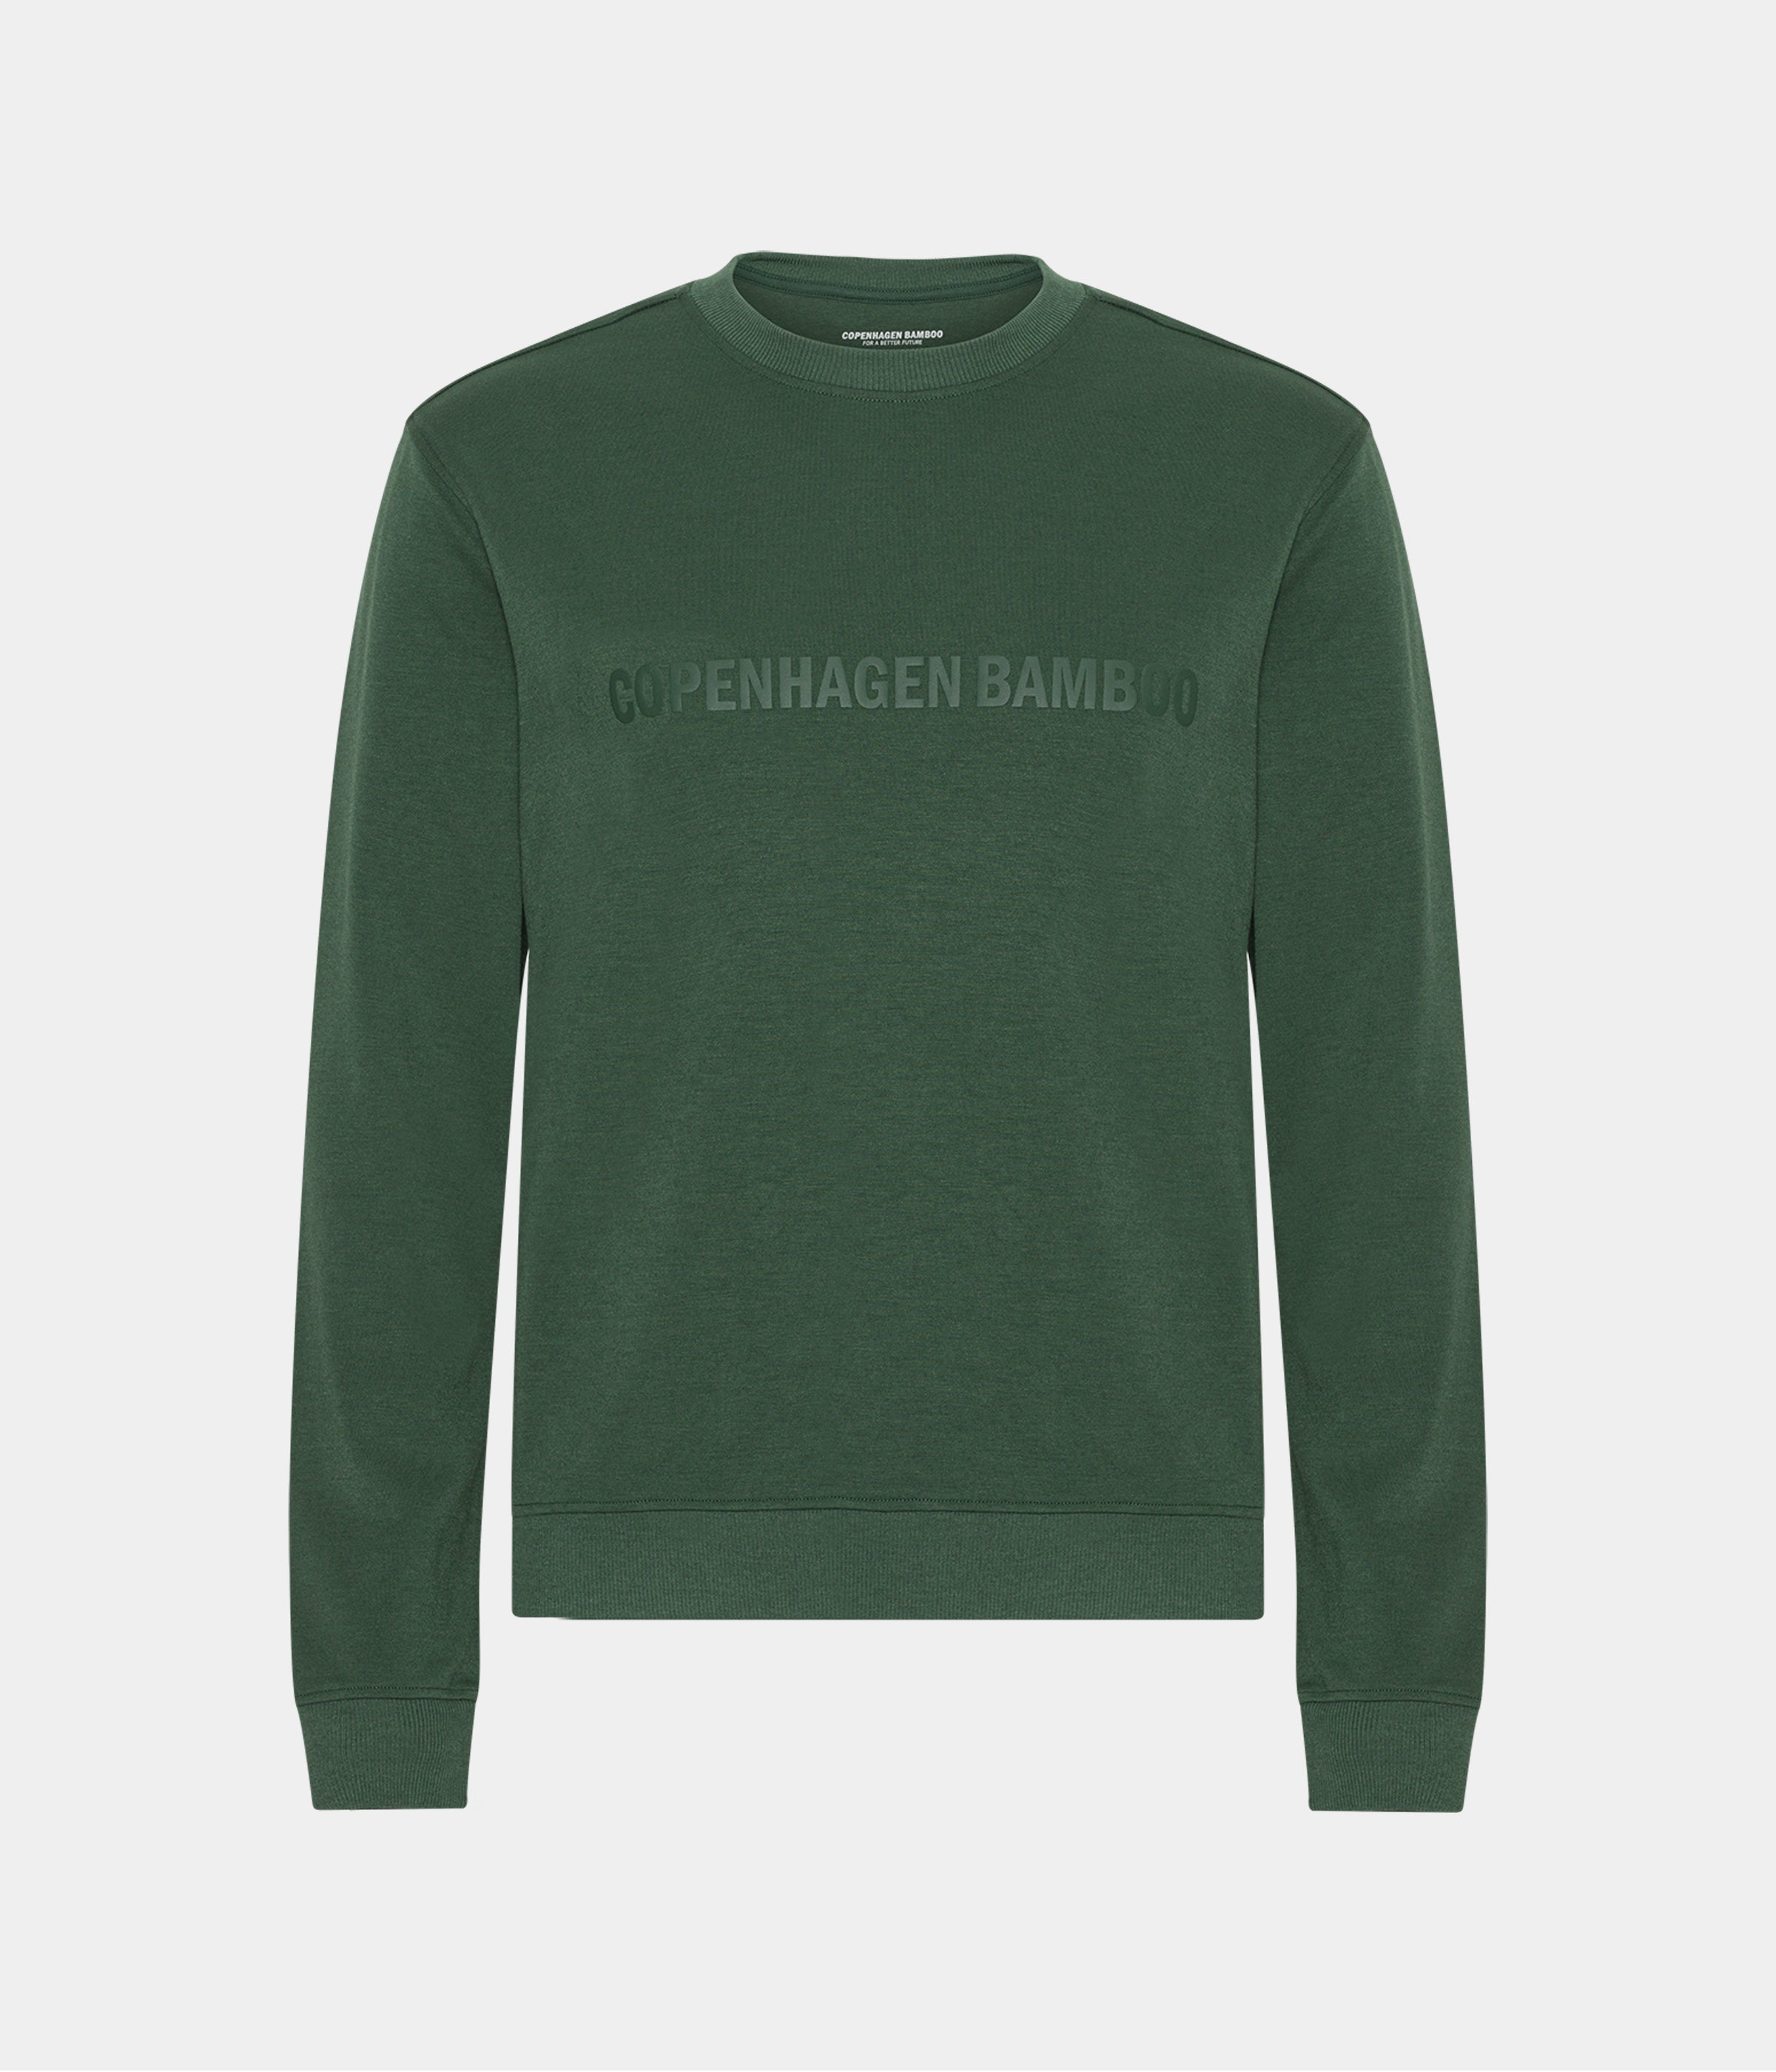 Grøn bambus sweatshirt til mænd med logo fra Copenhagen Bamboo, S